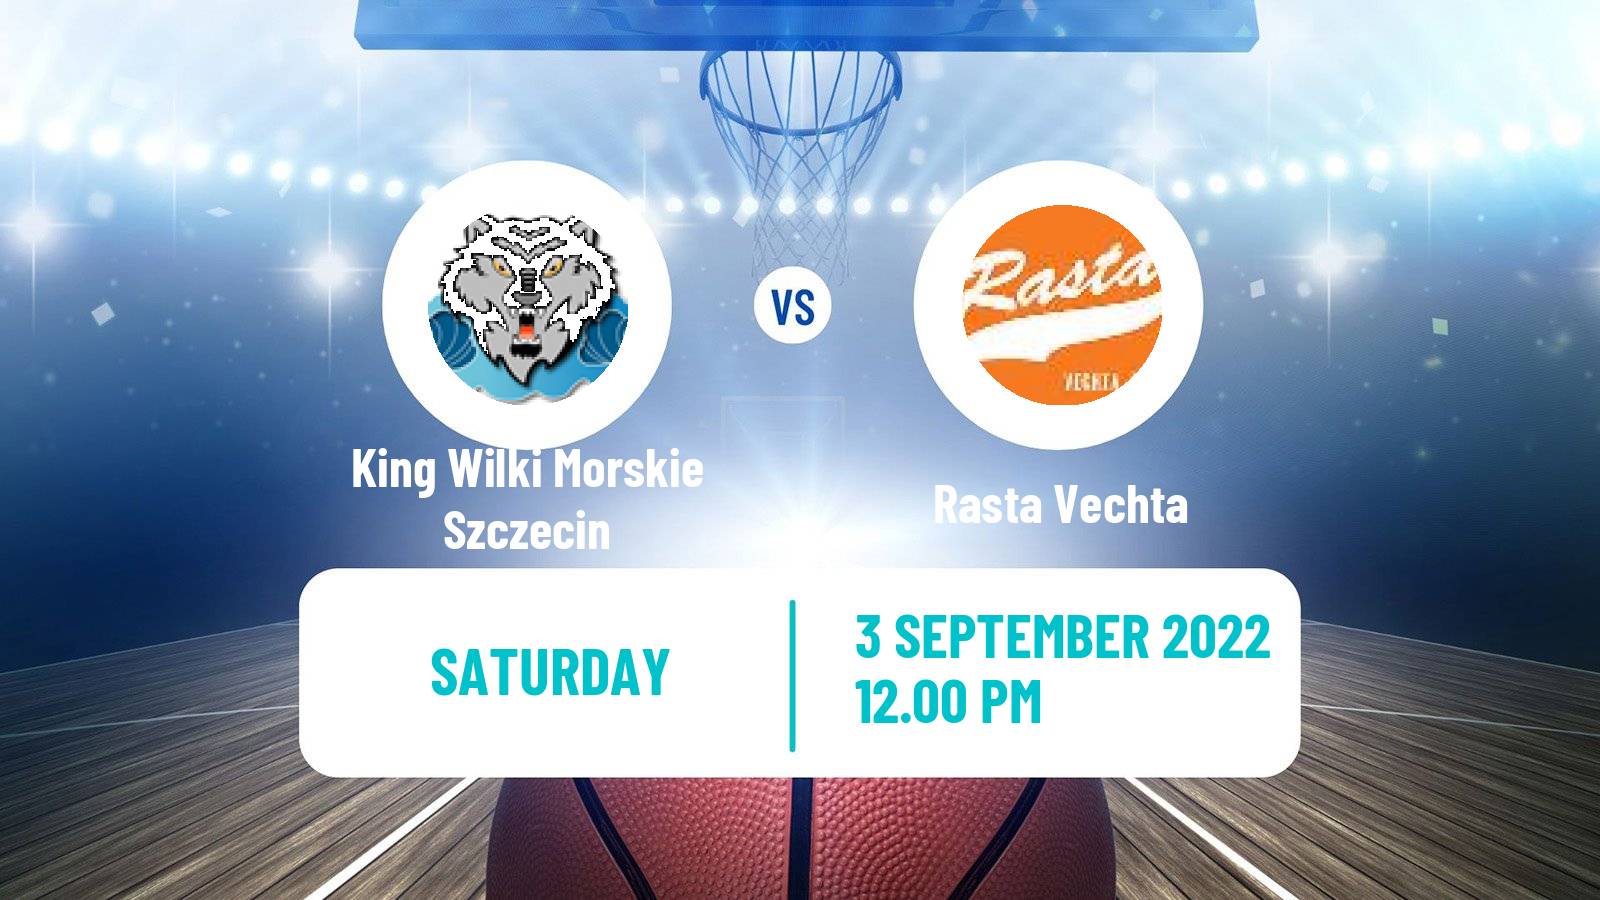 Basketball Club Friendly Basketball King Wilki Morskie Szczecin - Rasta Vechta